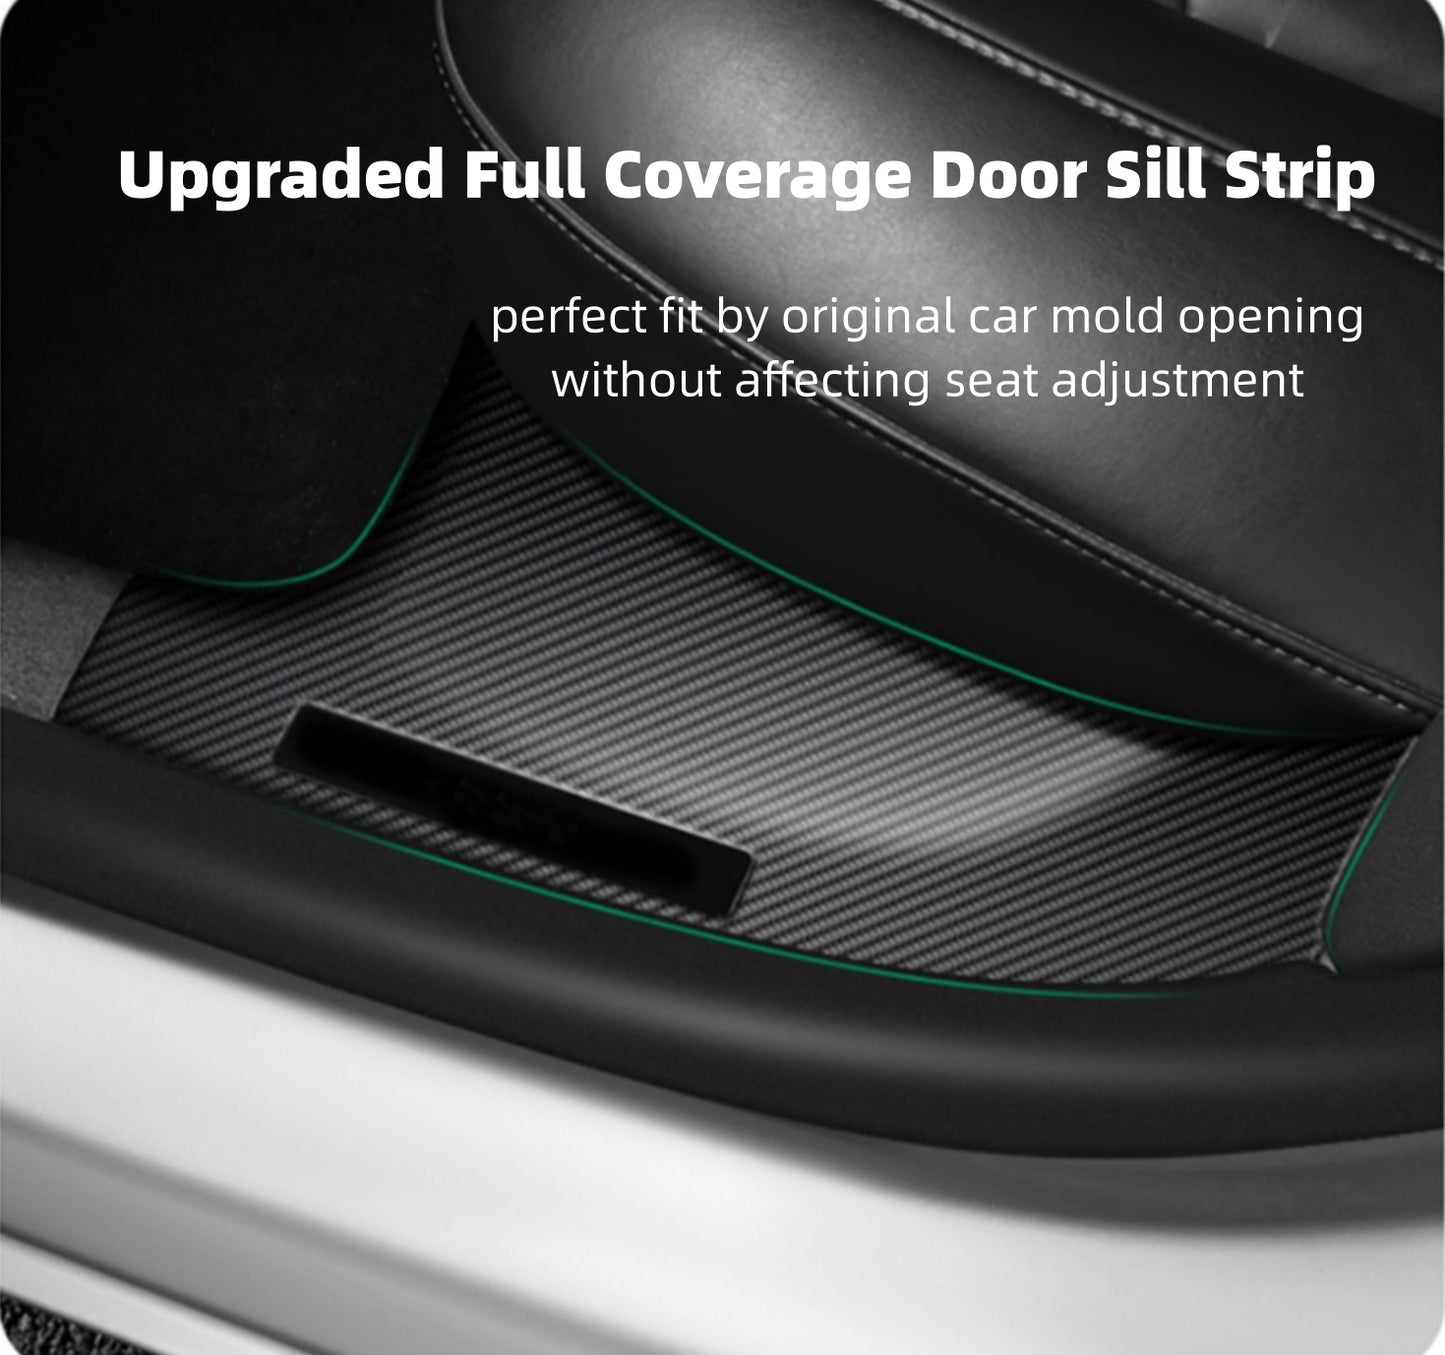 Protecteurs de seuil de porte avant et arrière en fibre de carbone de qualité supérieure, Protection complète pour modèle 3/Y